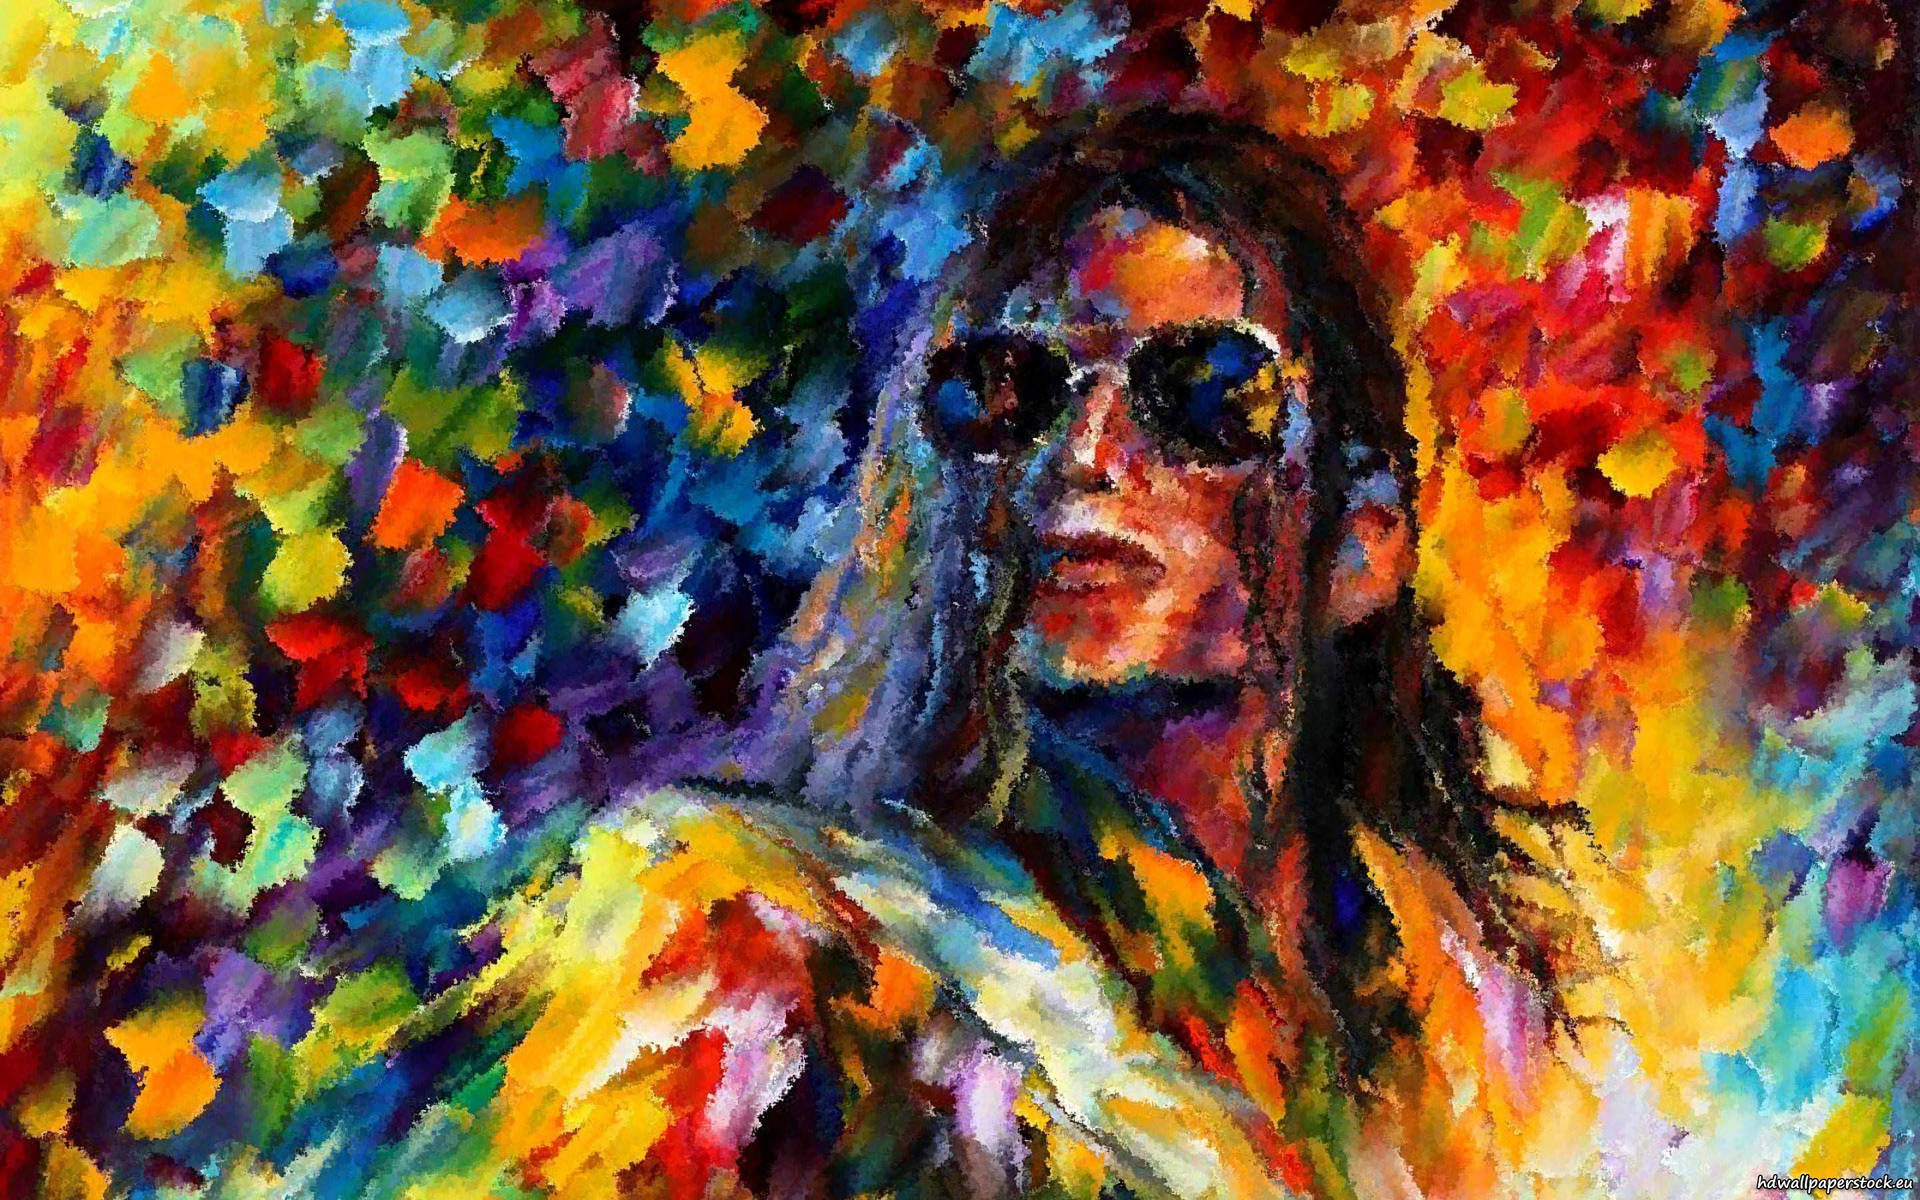 A portrait of musical legend Michael Jackson Wallpaper